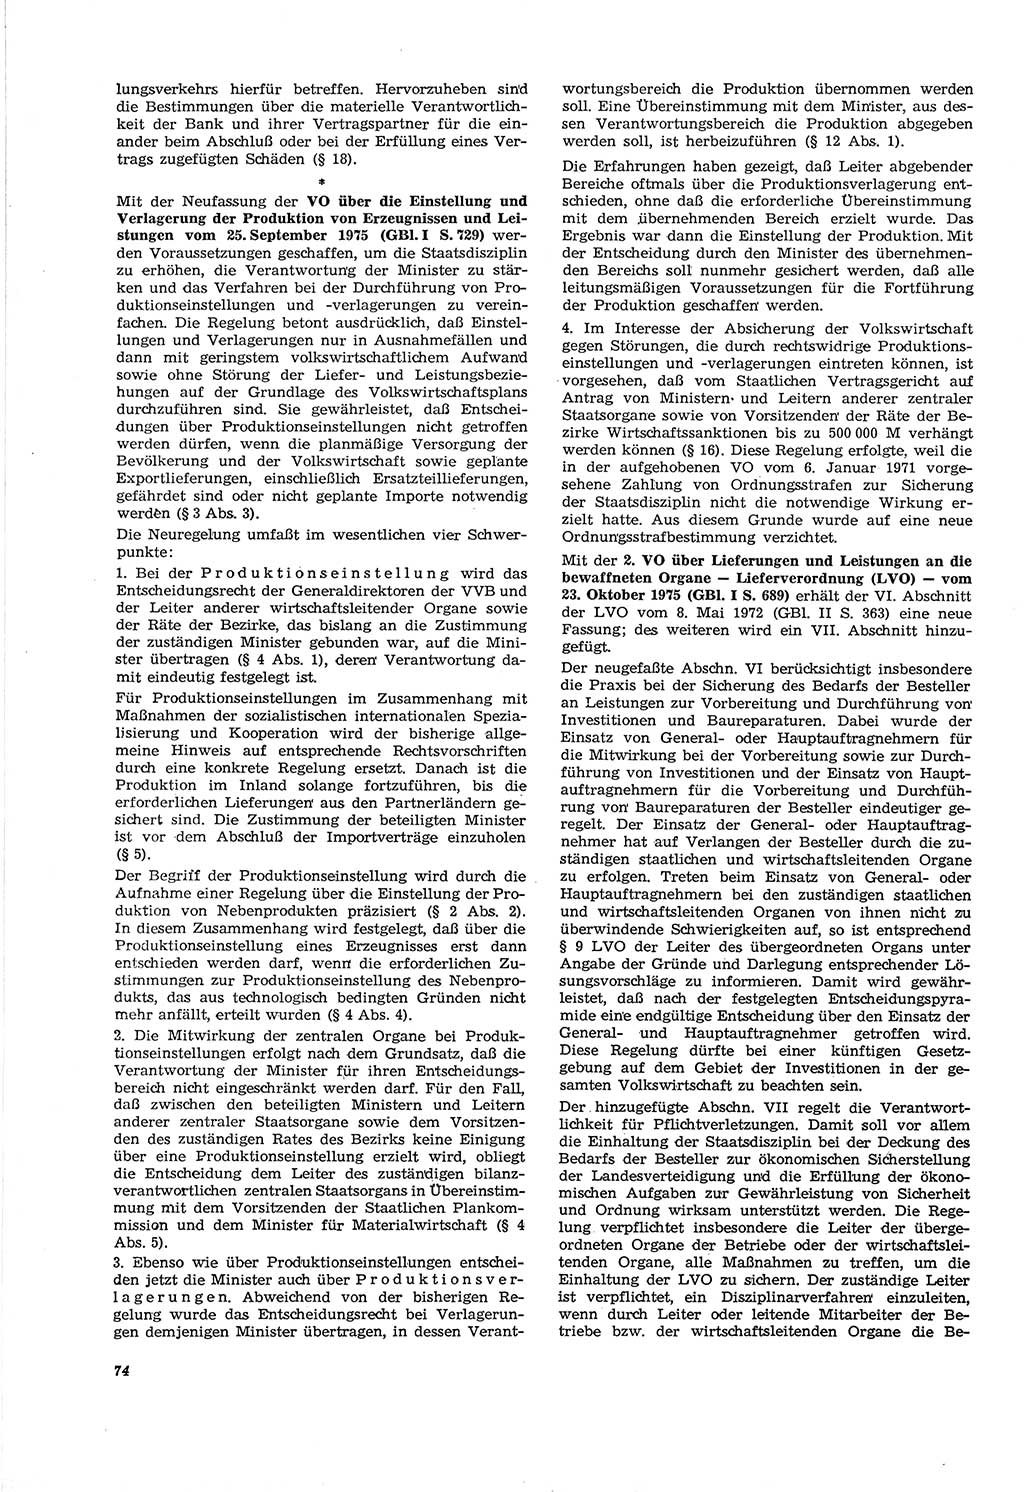 Neue Justiz (NJ), Zeitschrift für Recht und Rechtswissenschaft [Deutsche Demokratische Republik (DDR)], 30. Jahrgang 1976, Seite 74 (NJ DDR 1976, S. 74)